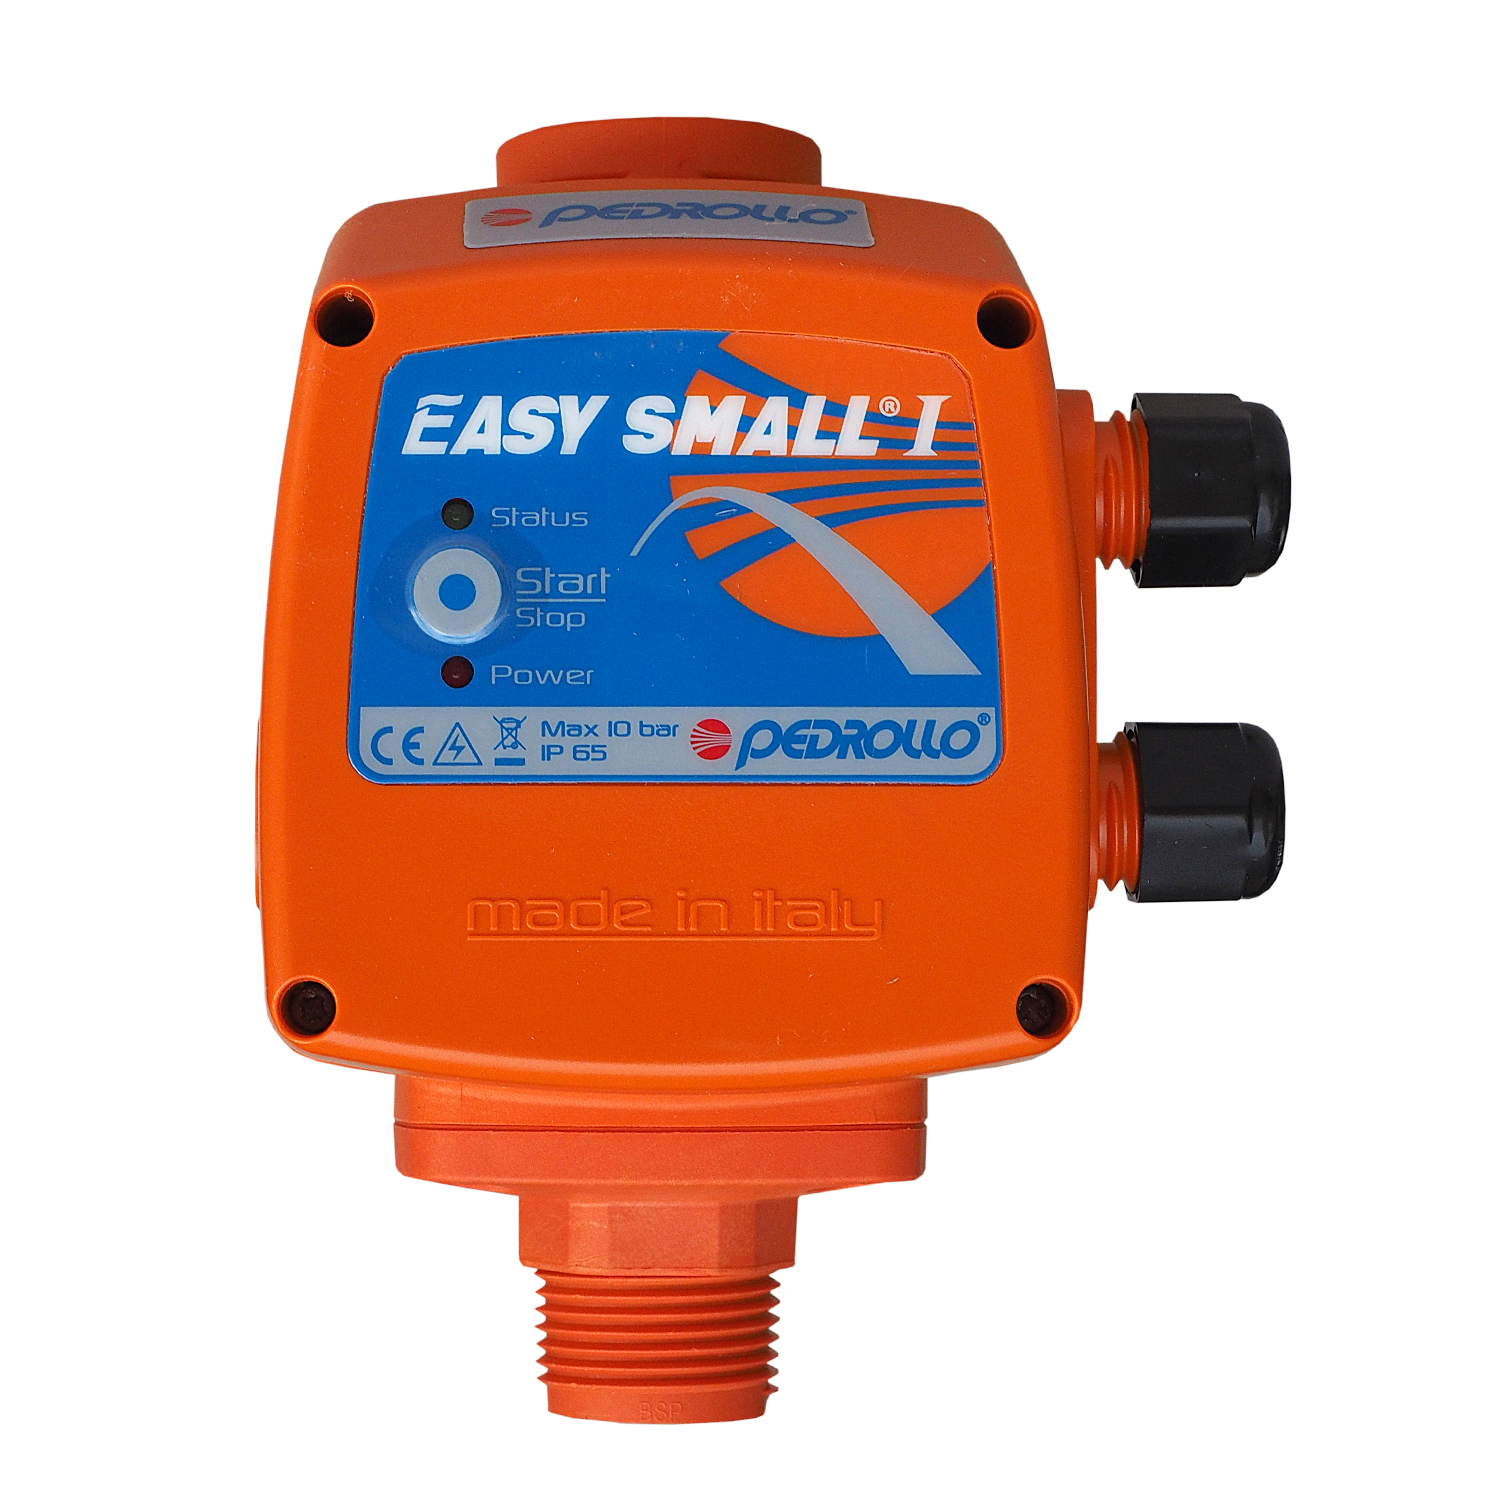 schema montaj pompa submersibila cu presostat electronic Pedrollo Presostat electronic pompa pedrollo easysmall 1